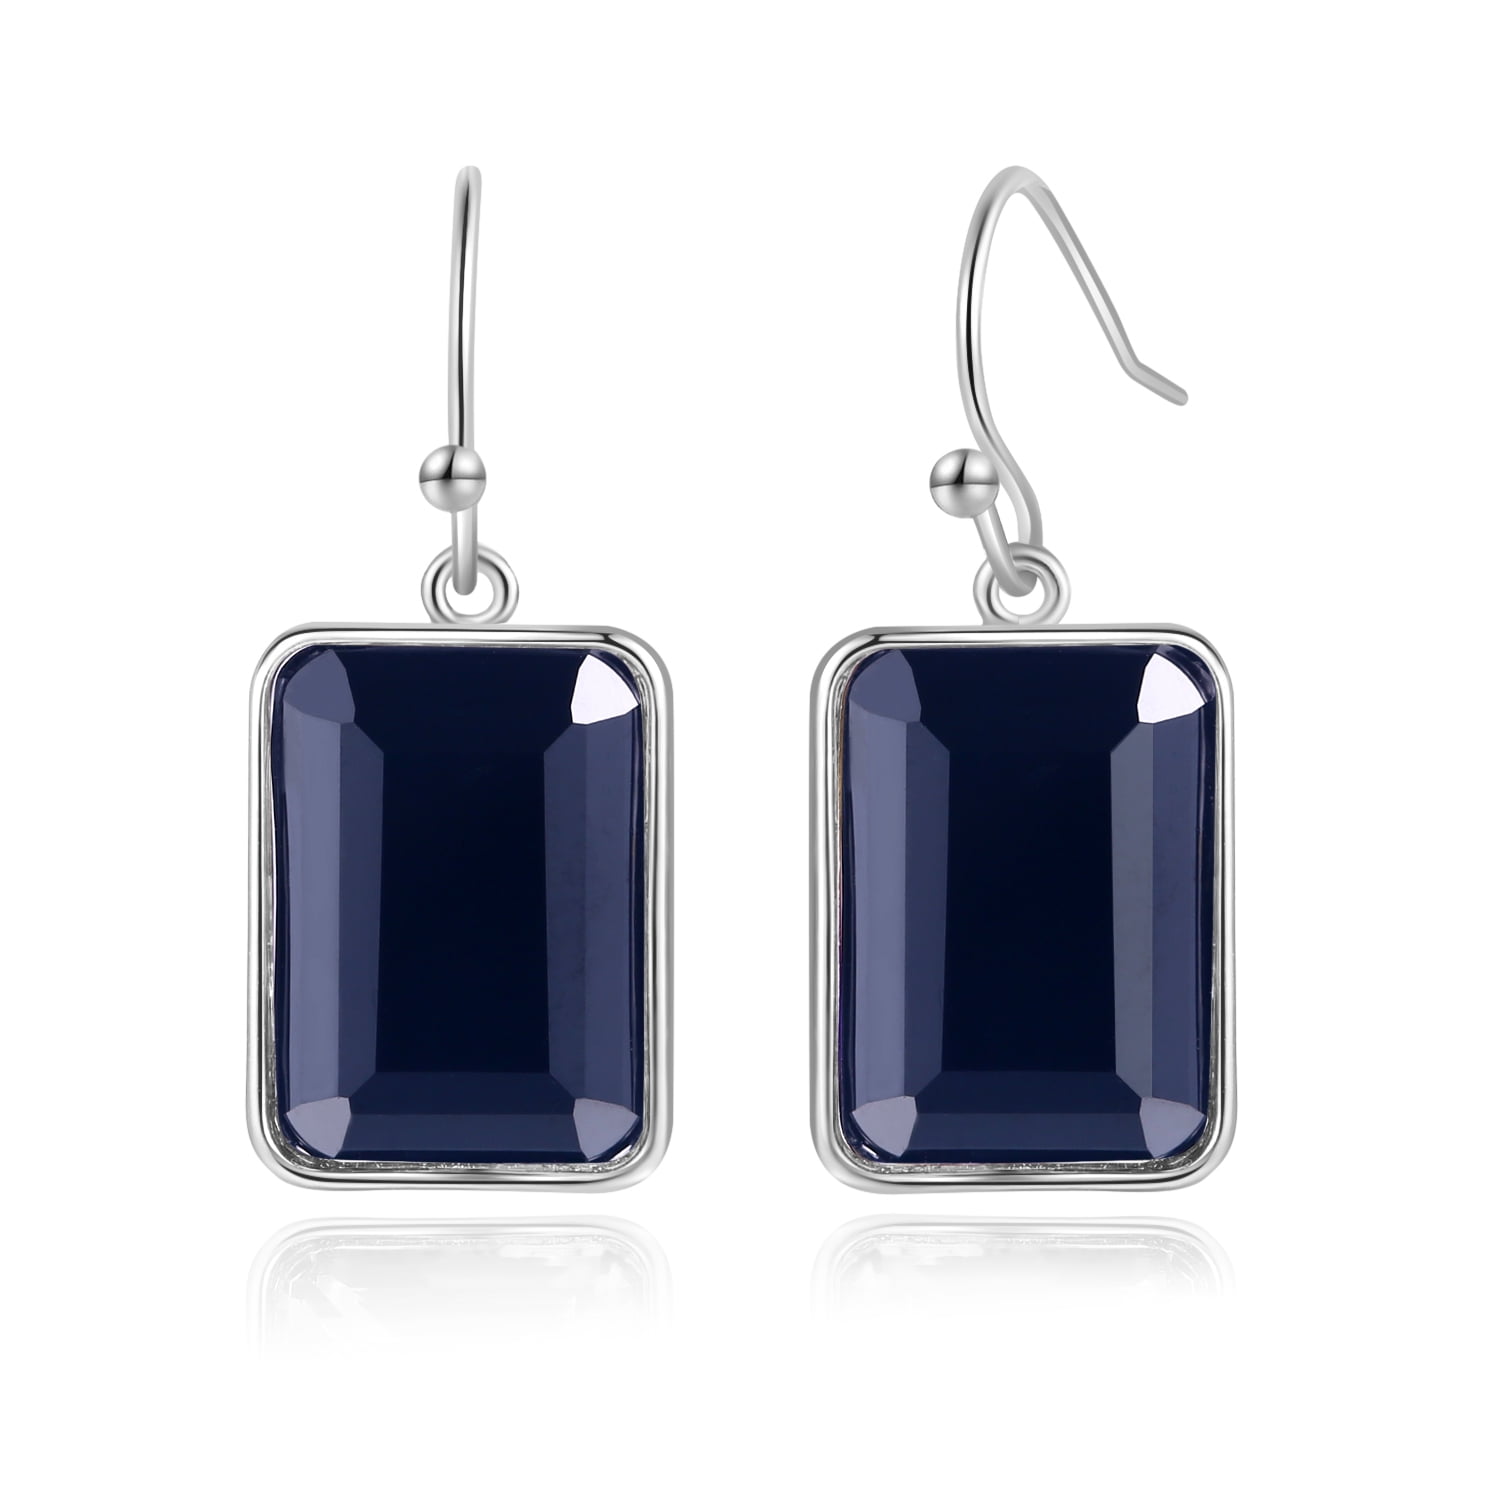 gemstone earrings silver tassel earrings Black stone dangle earrings tassel earrings black earrings black onyx elegant silver earrings